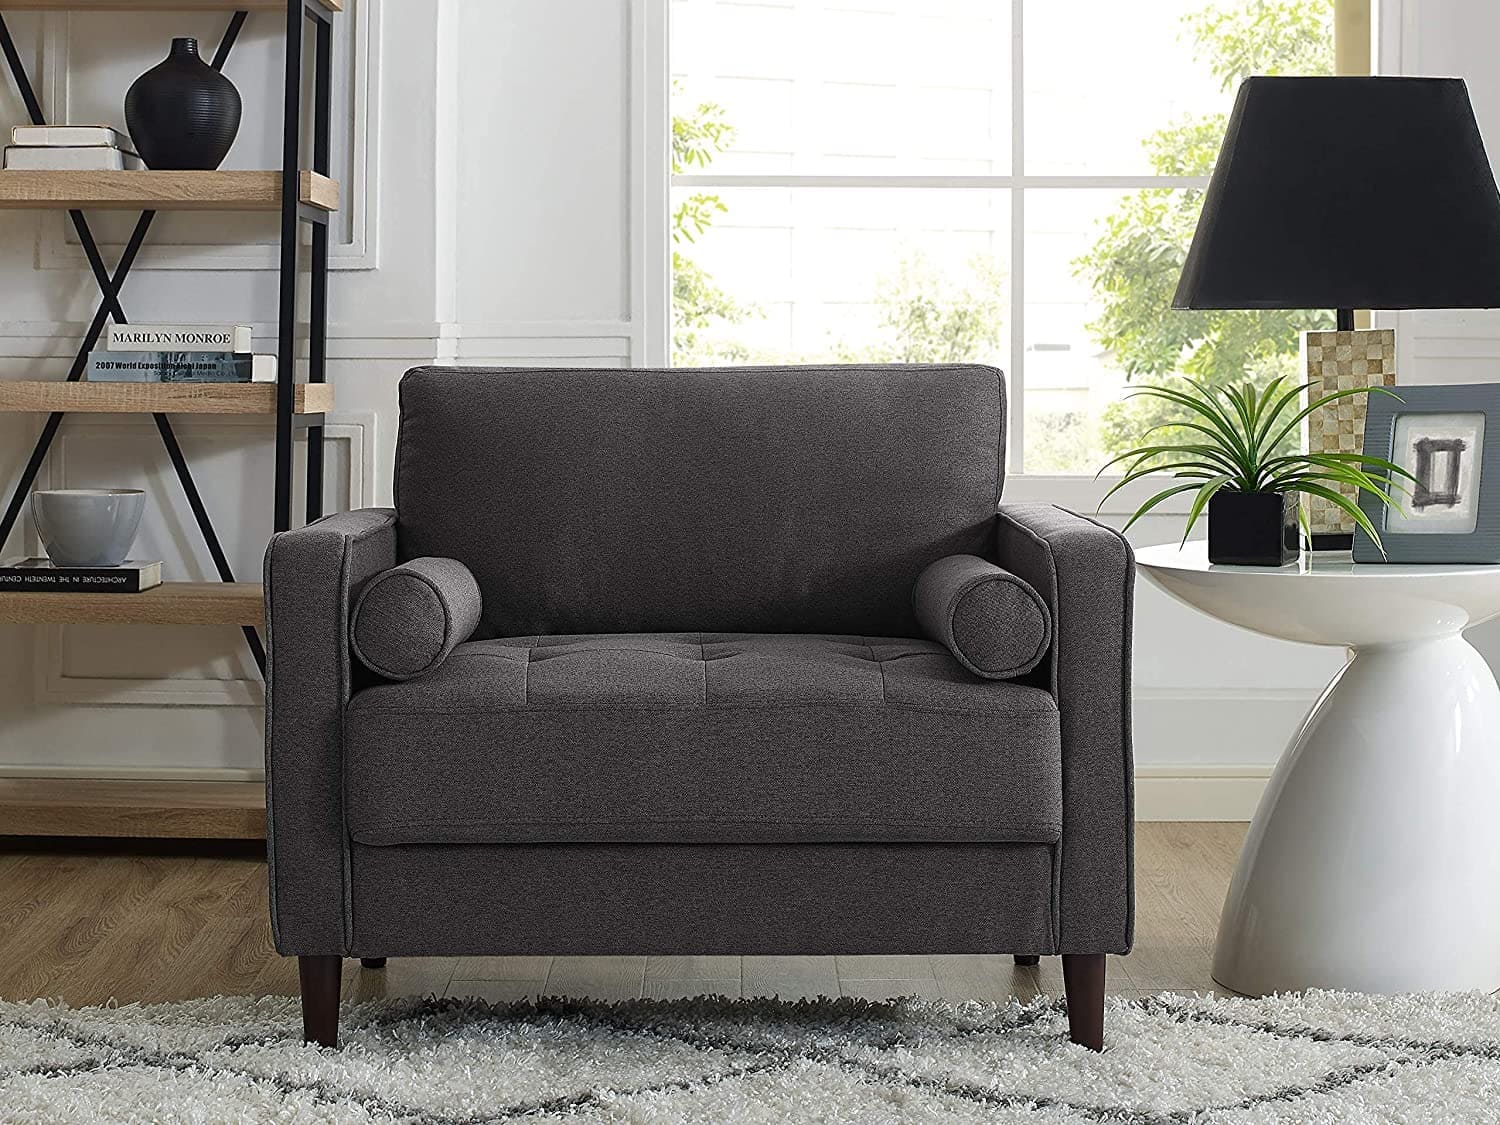 IKEA style armchairs